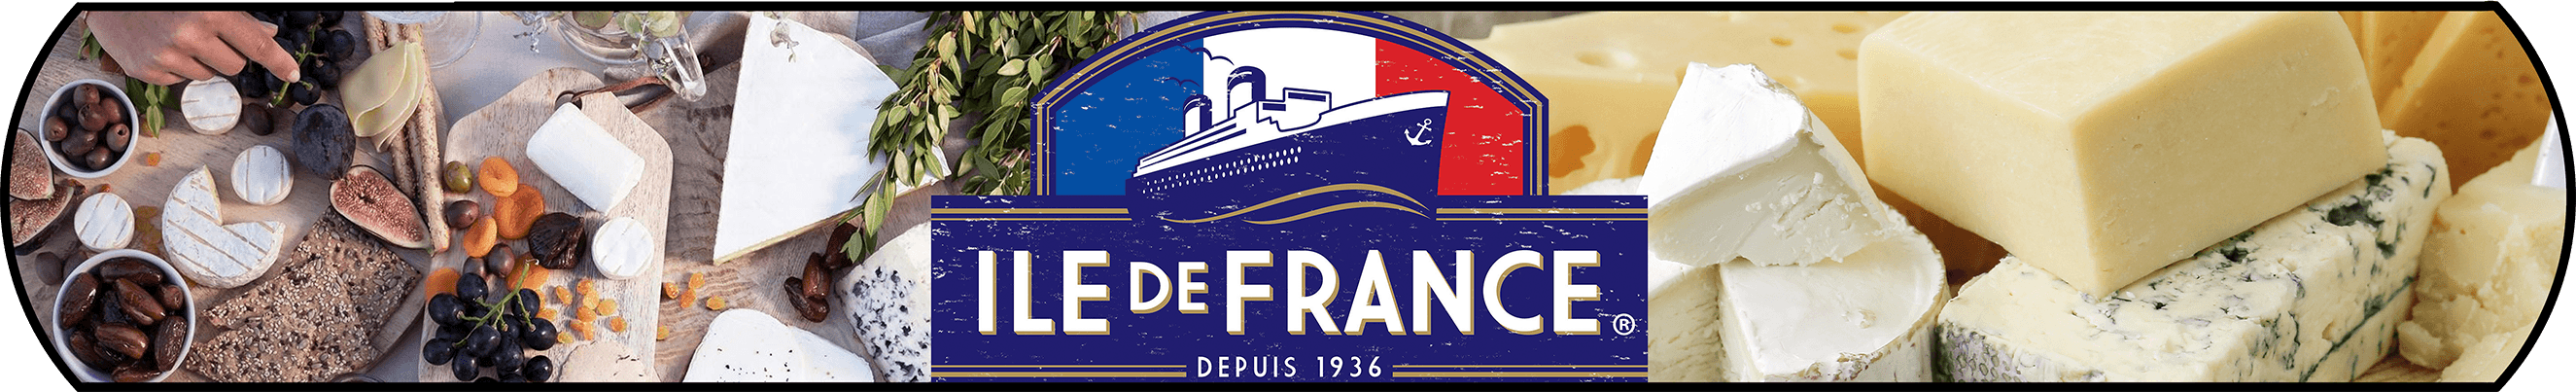 Ile De France Banner